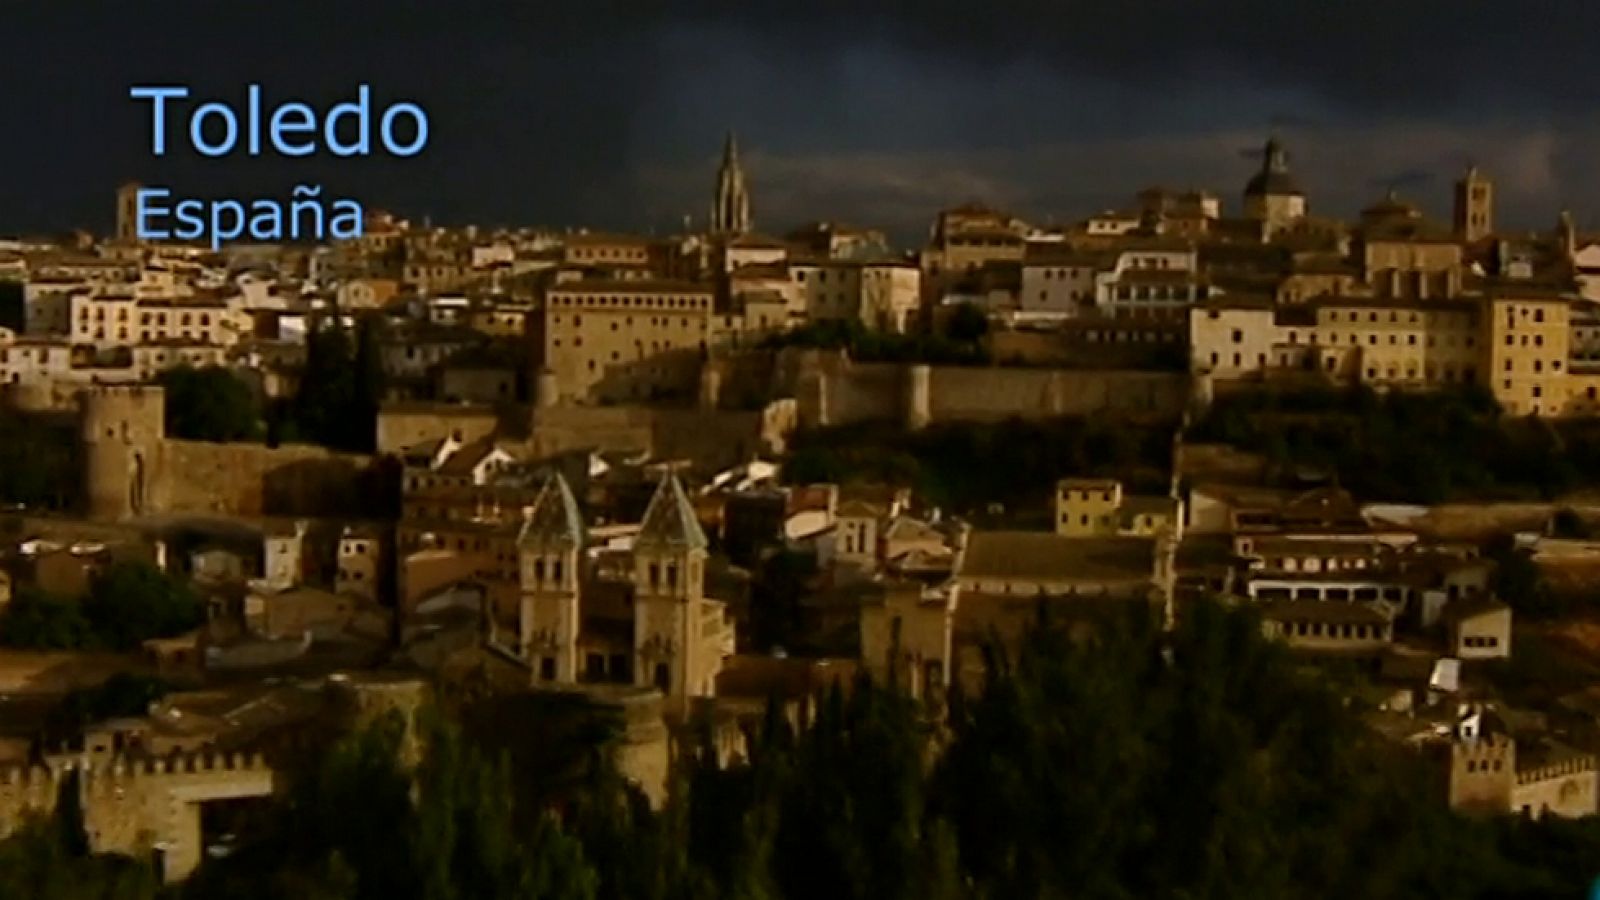 Unidos por el Patrimonio - Toledo